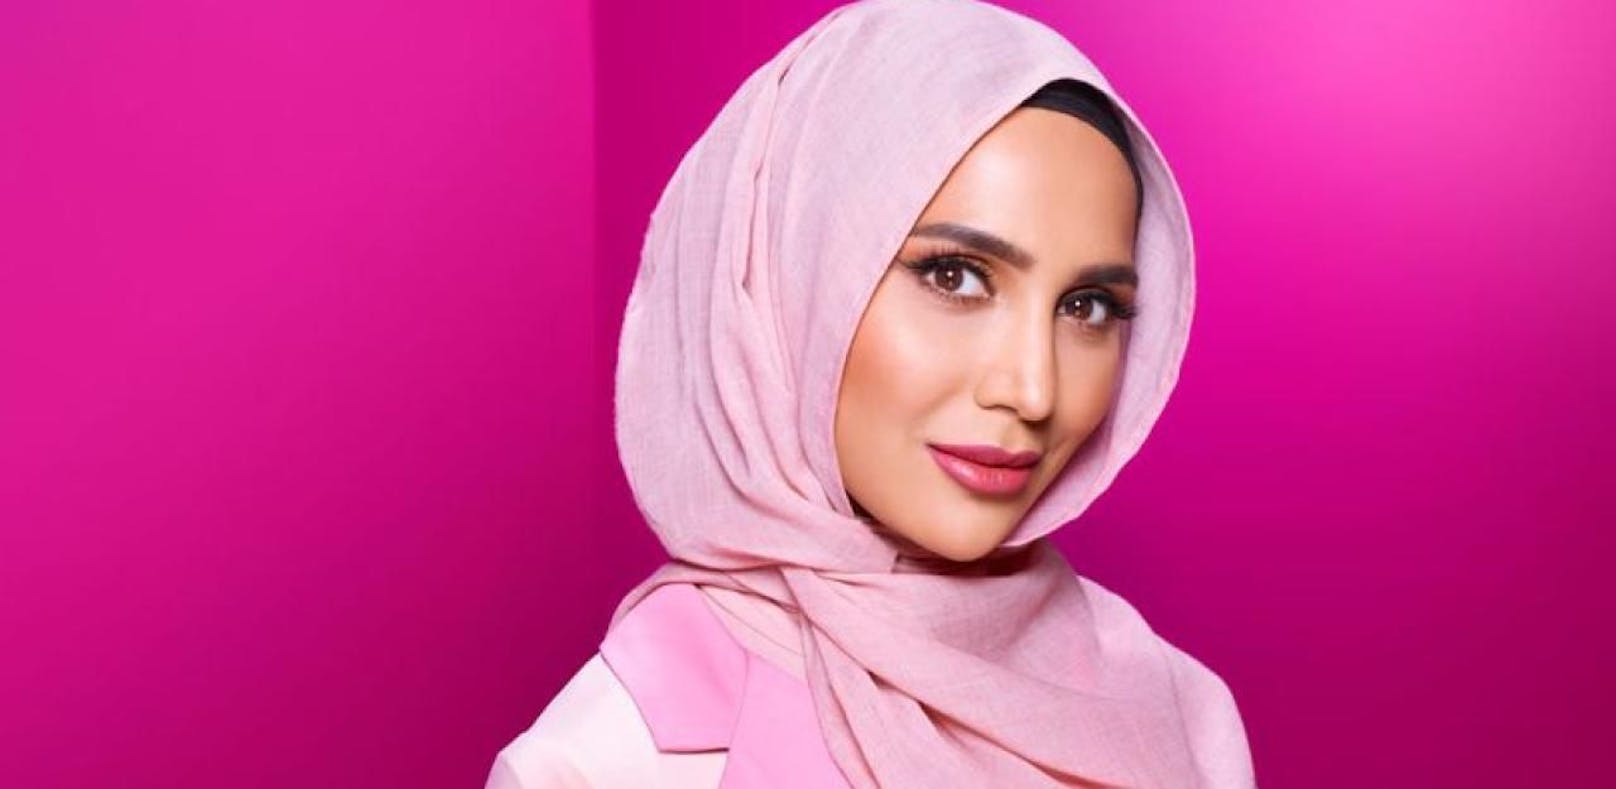 L'Oréal wirbt erstmals mit Hijab-Model für Shampoo